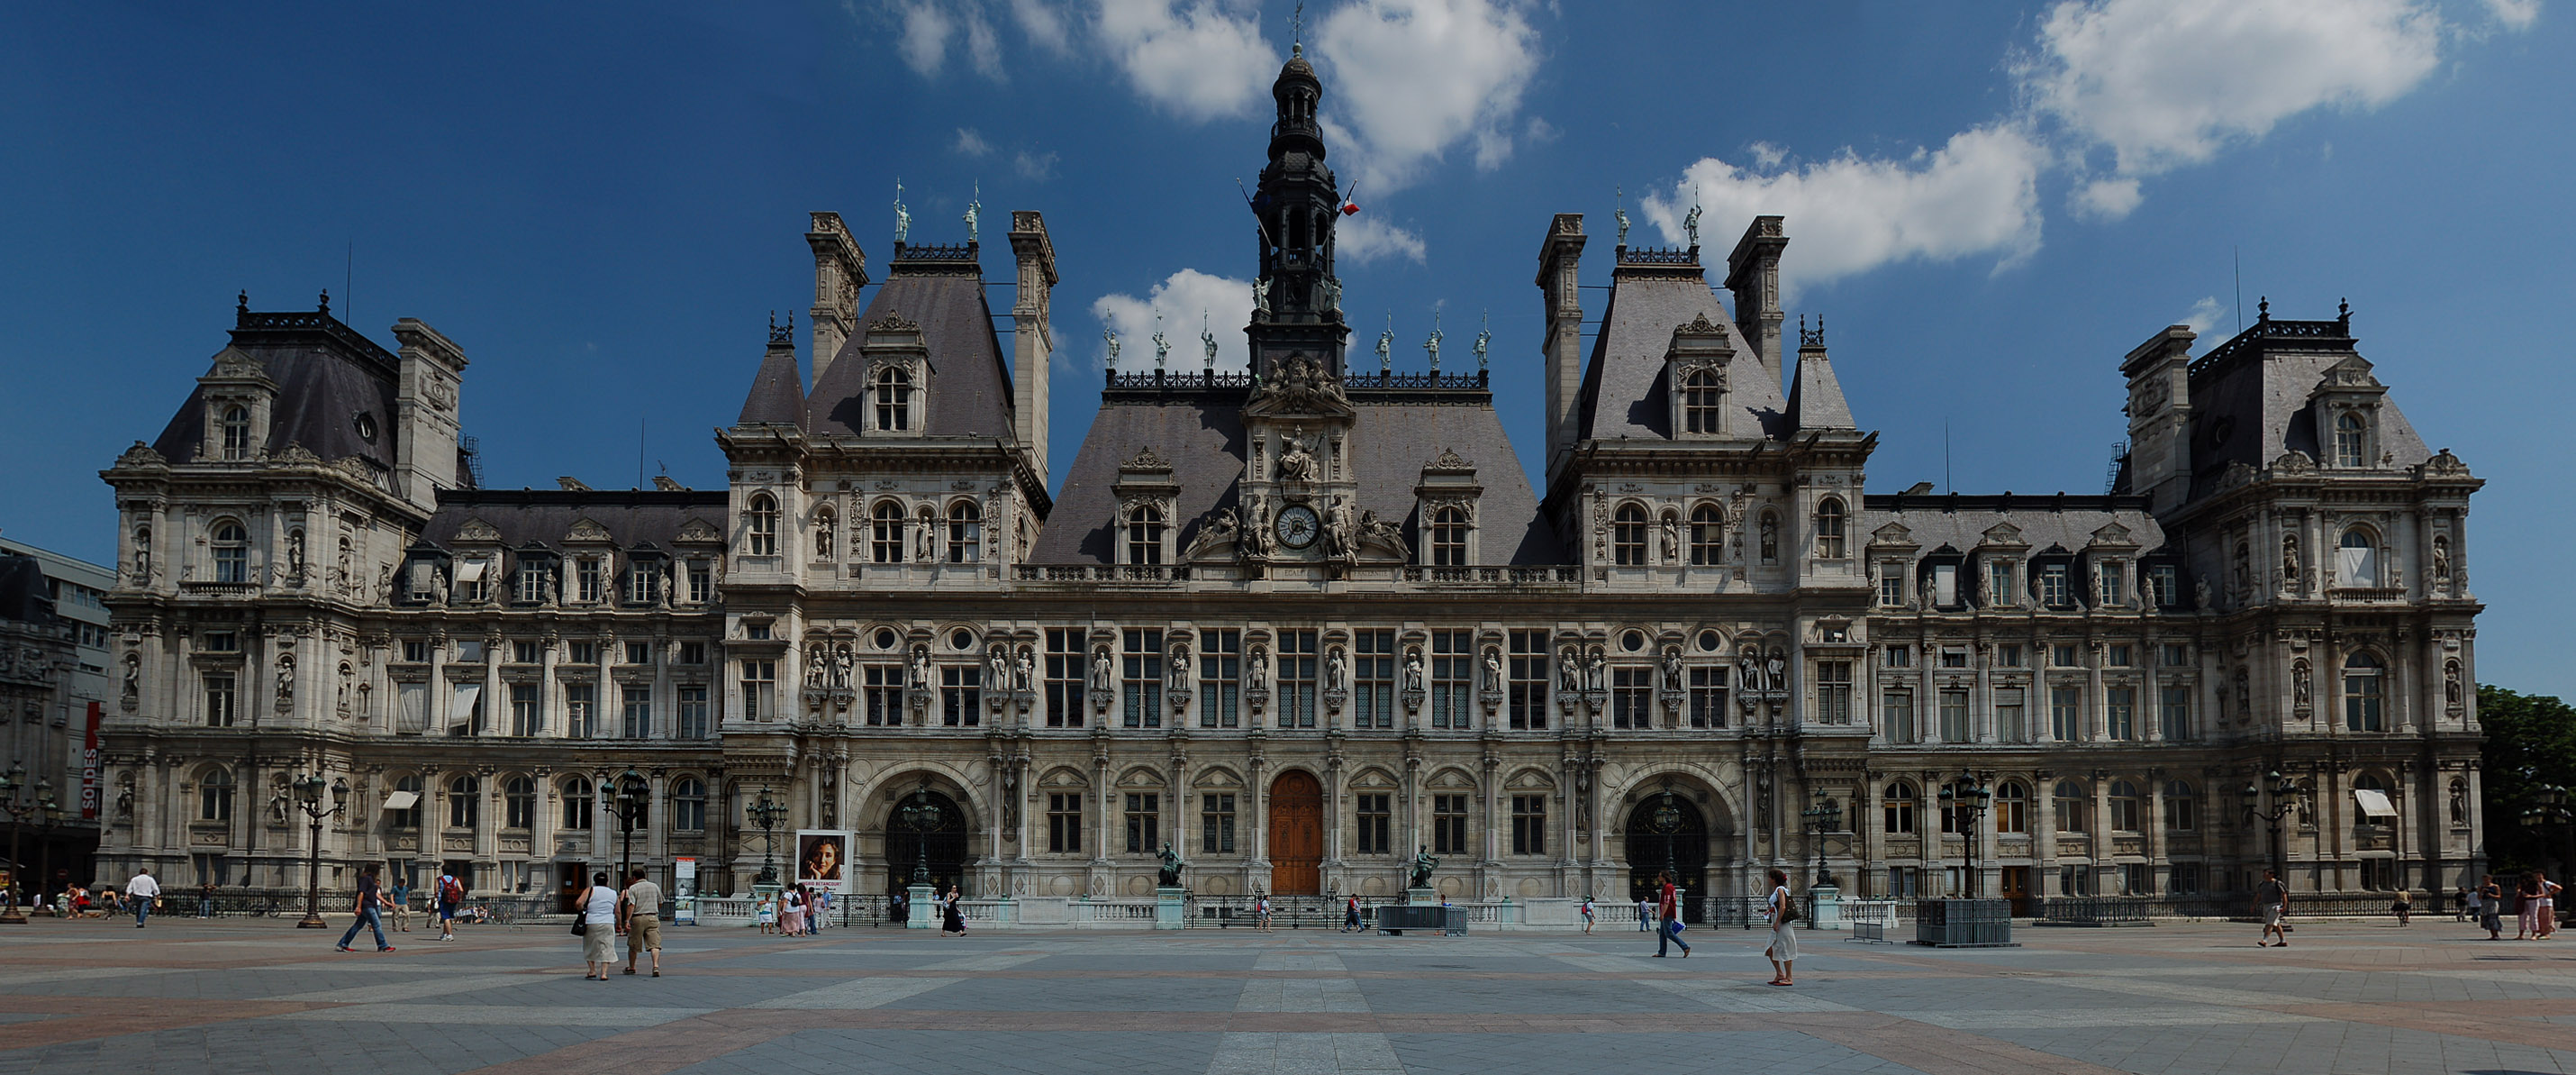 File:Hôtel de ville de Paris (panoramique).jpg - Wikimedia Commons